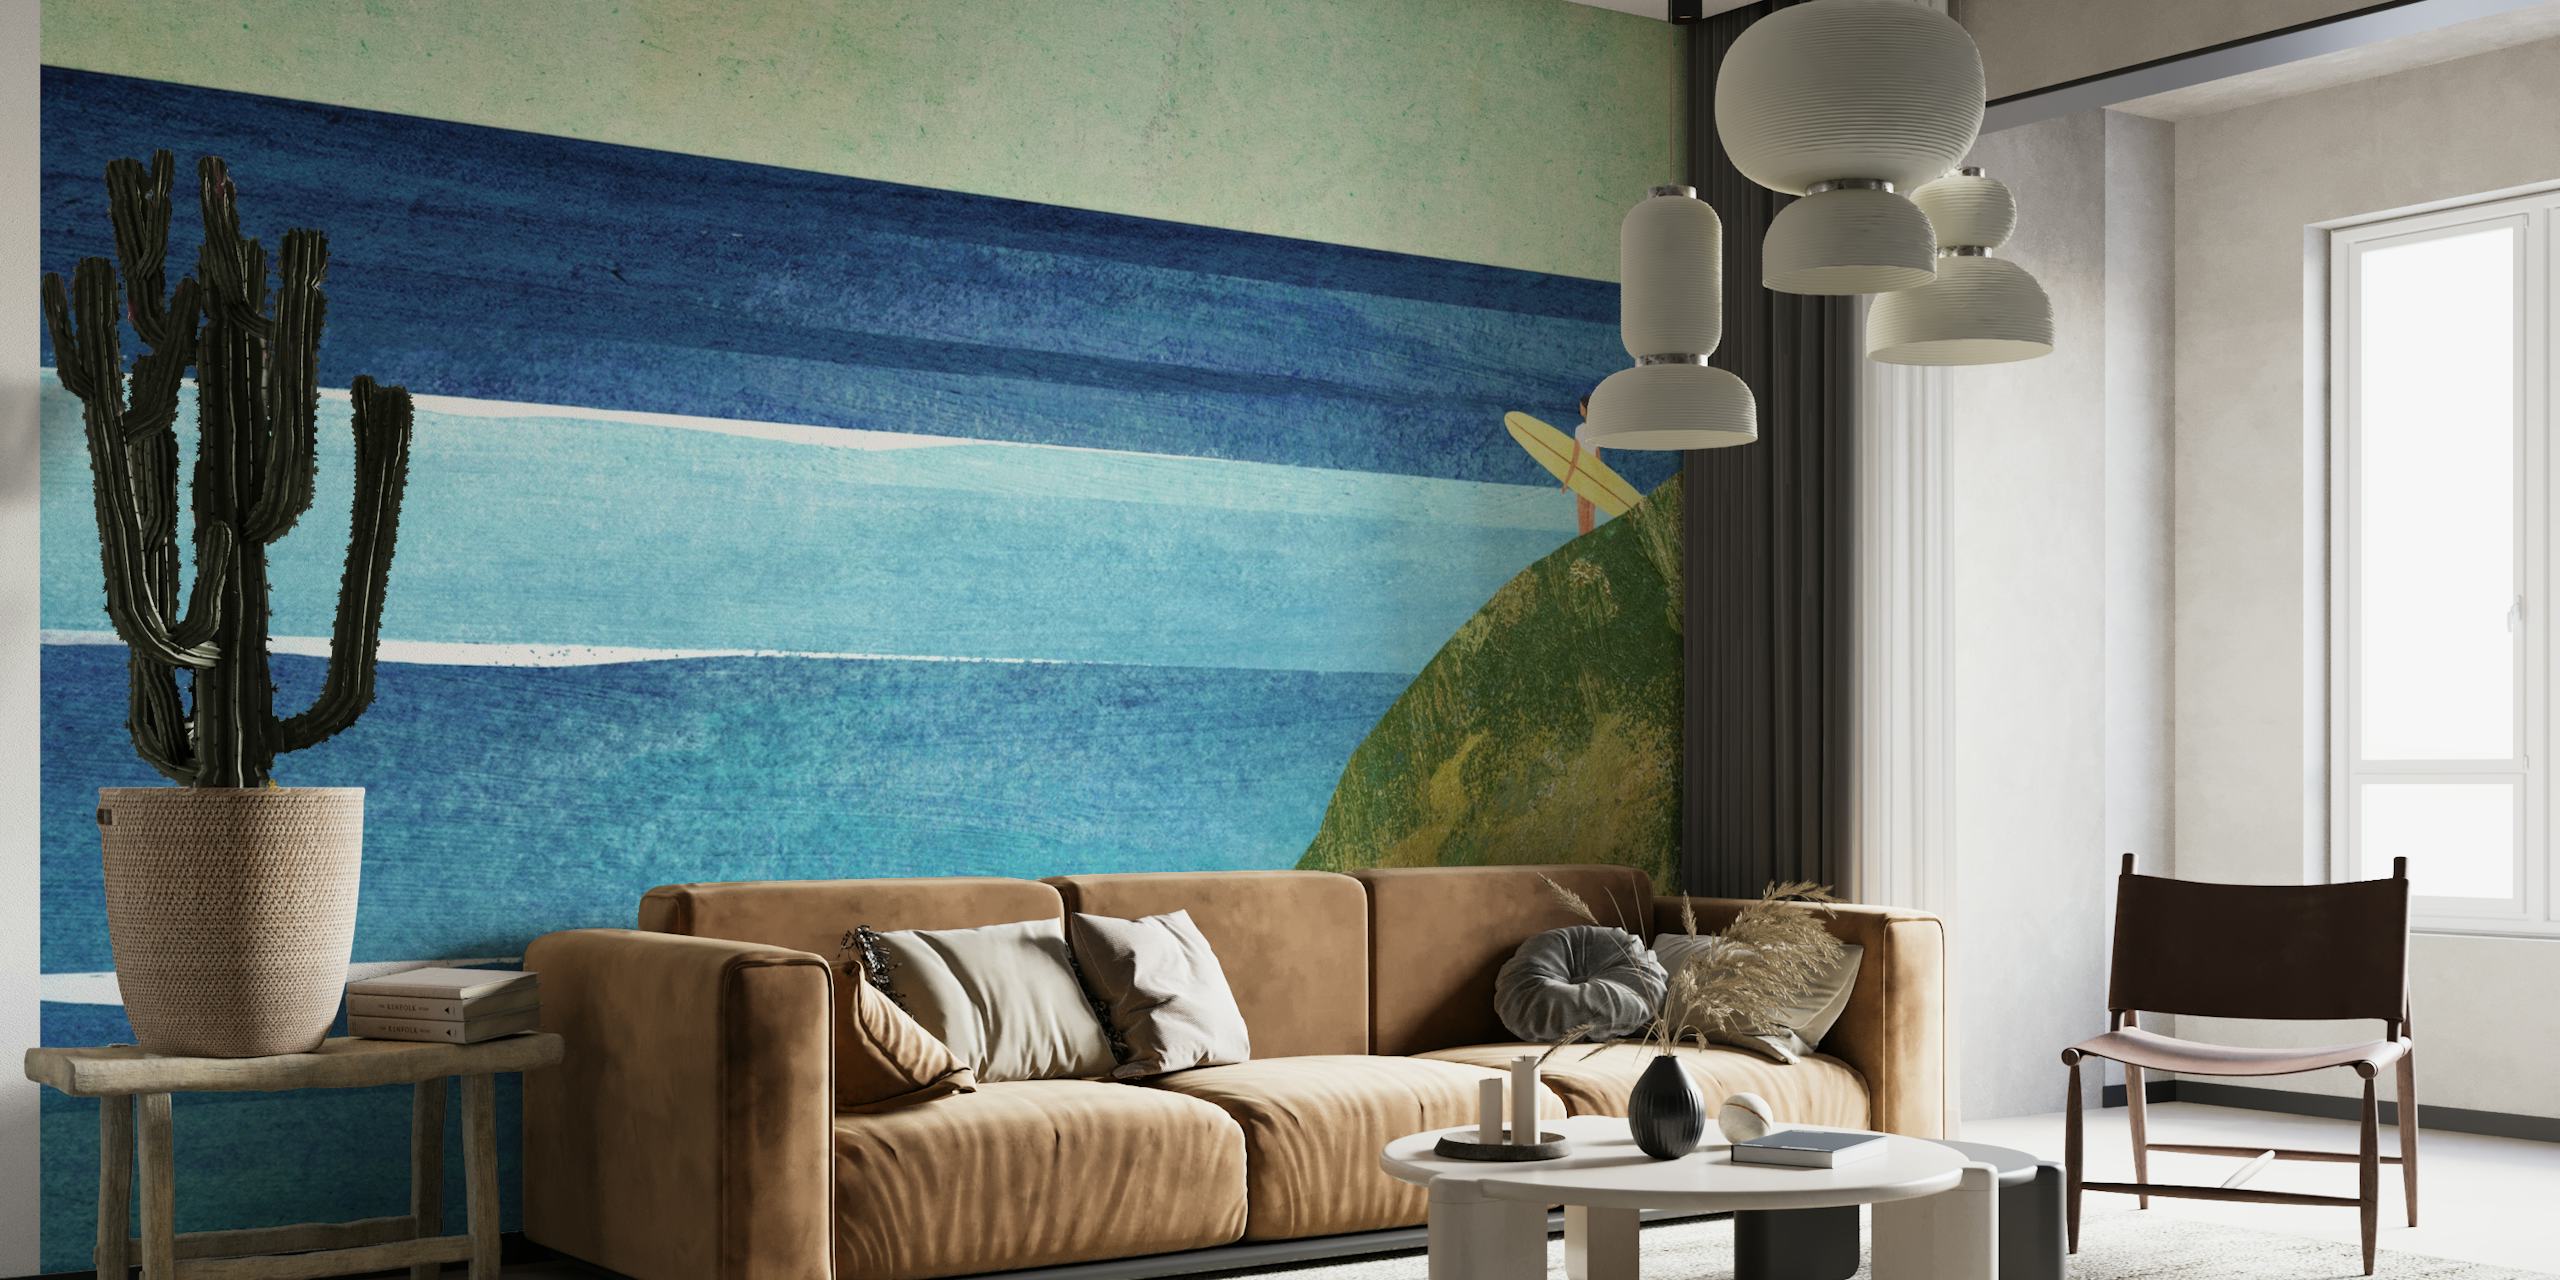 Zidni mural obalnog morskog pejzaža sa savršenim valovima i surferom na obali